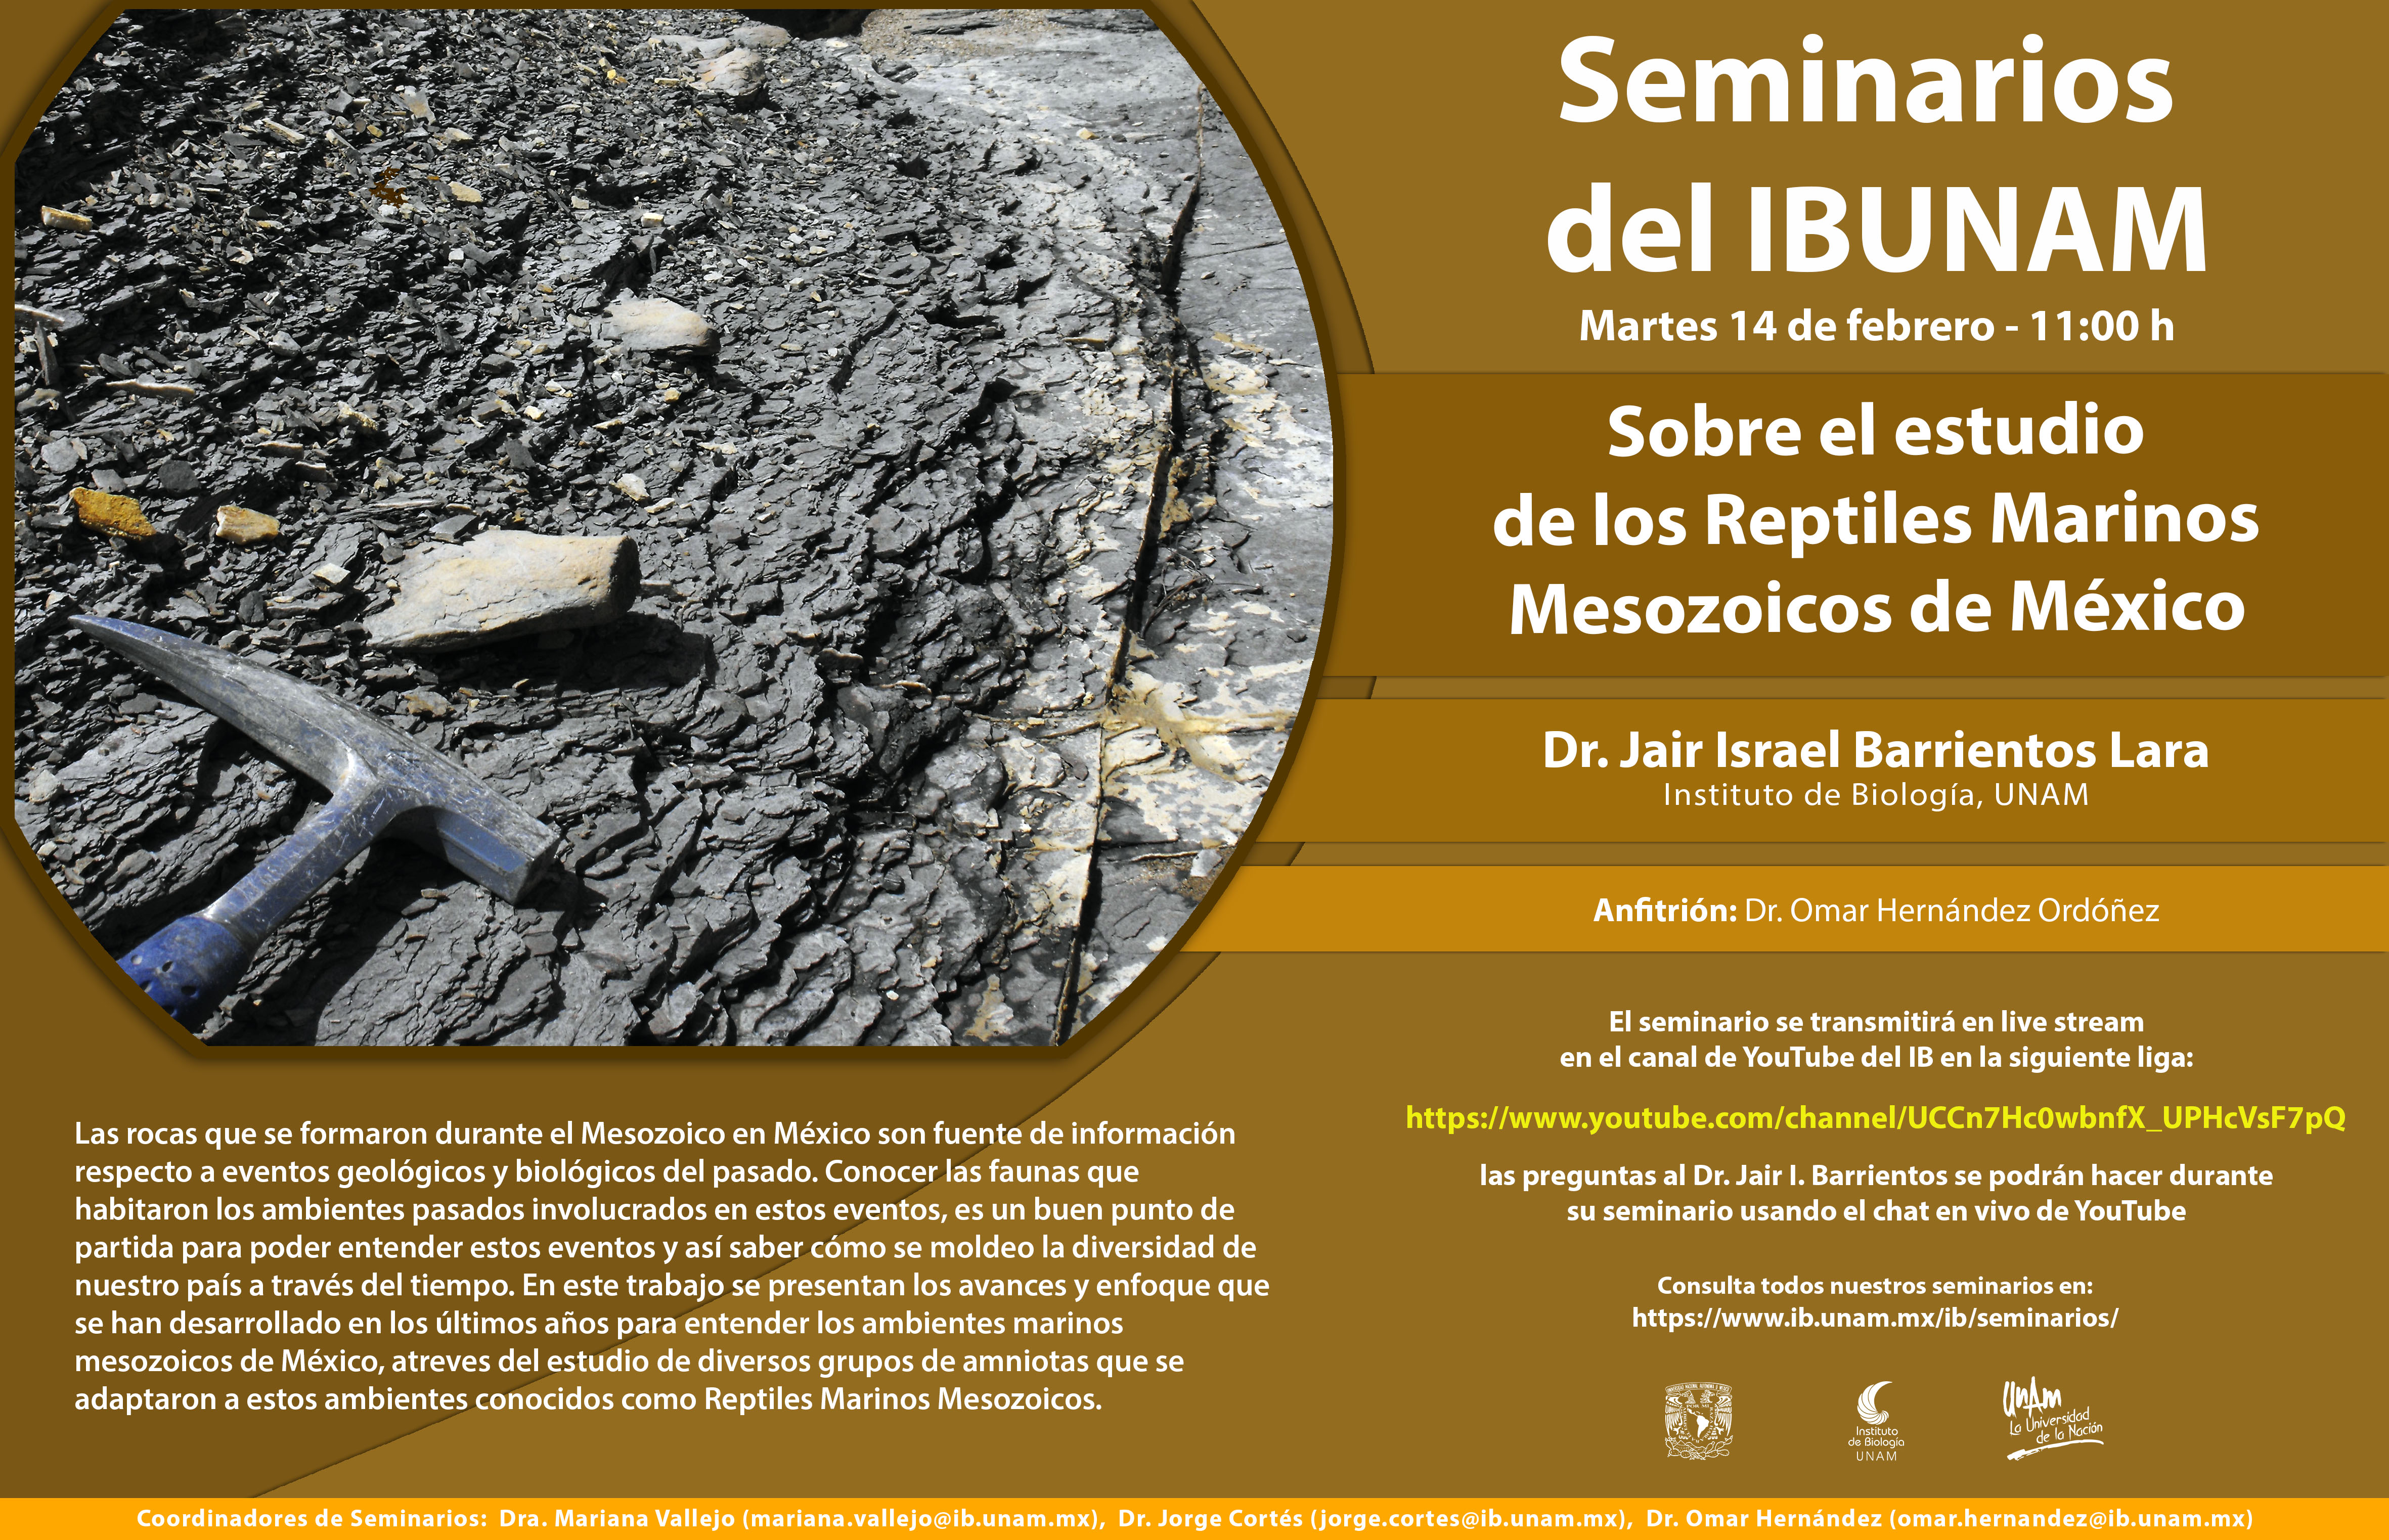 Sobre el estudio de los Reptiles Marinos Mesozoicos de México - Instituto de Biología, UNAM